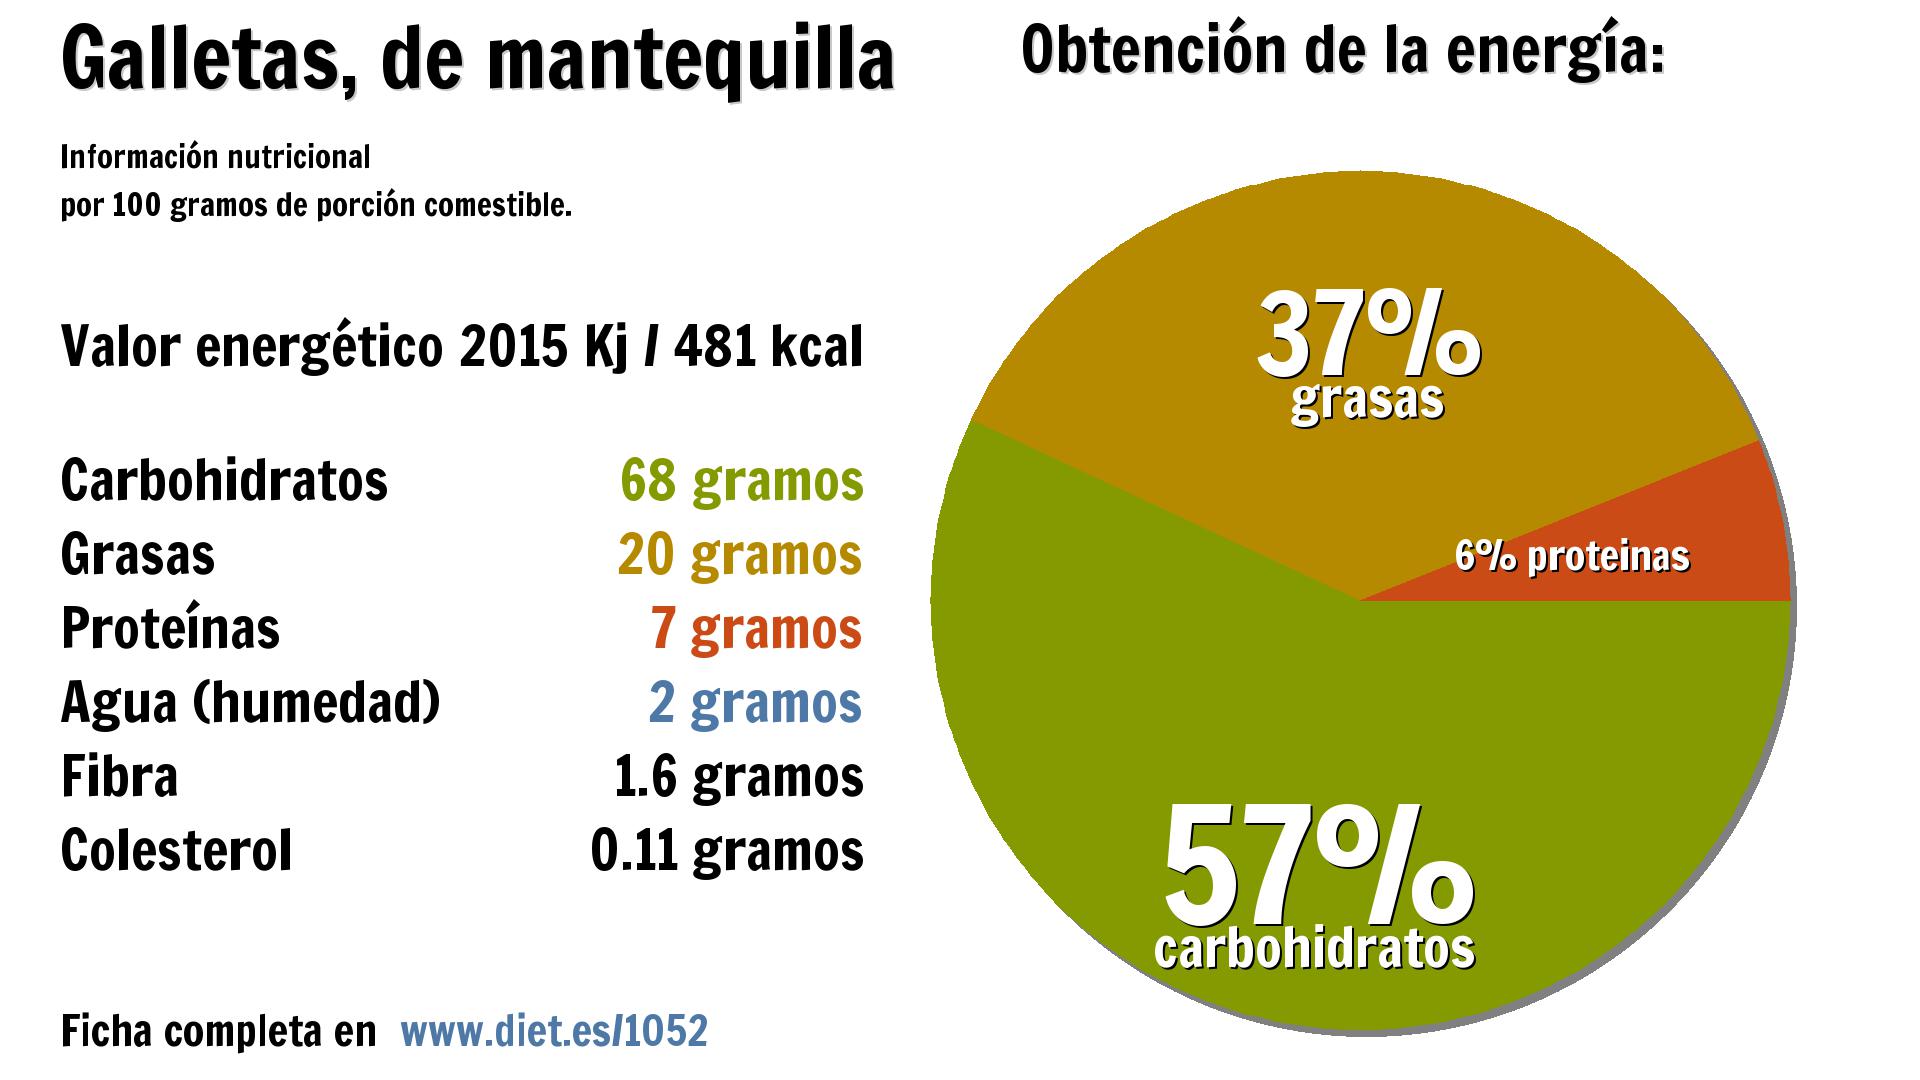 Galletas, de mantequilla: energía 2015 Kj, carbohidratos 68 g., grasas 20 g., proteínas 7 g., agua 2 g. y fibra 2 g.